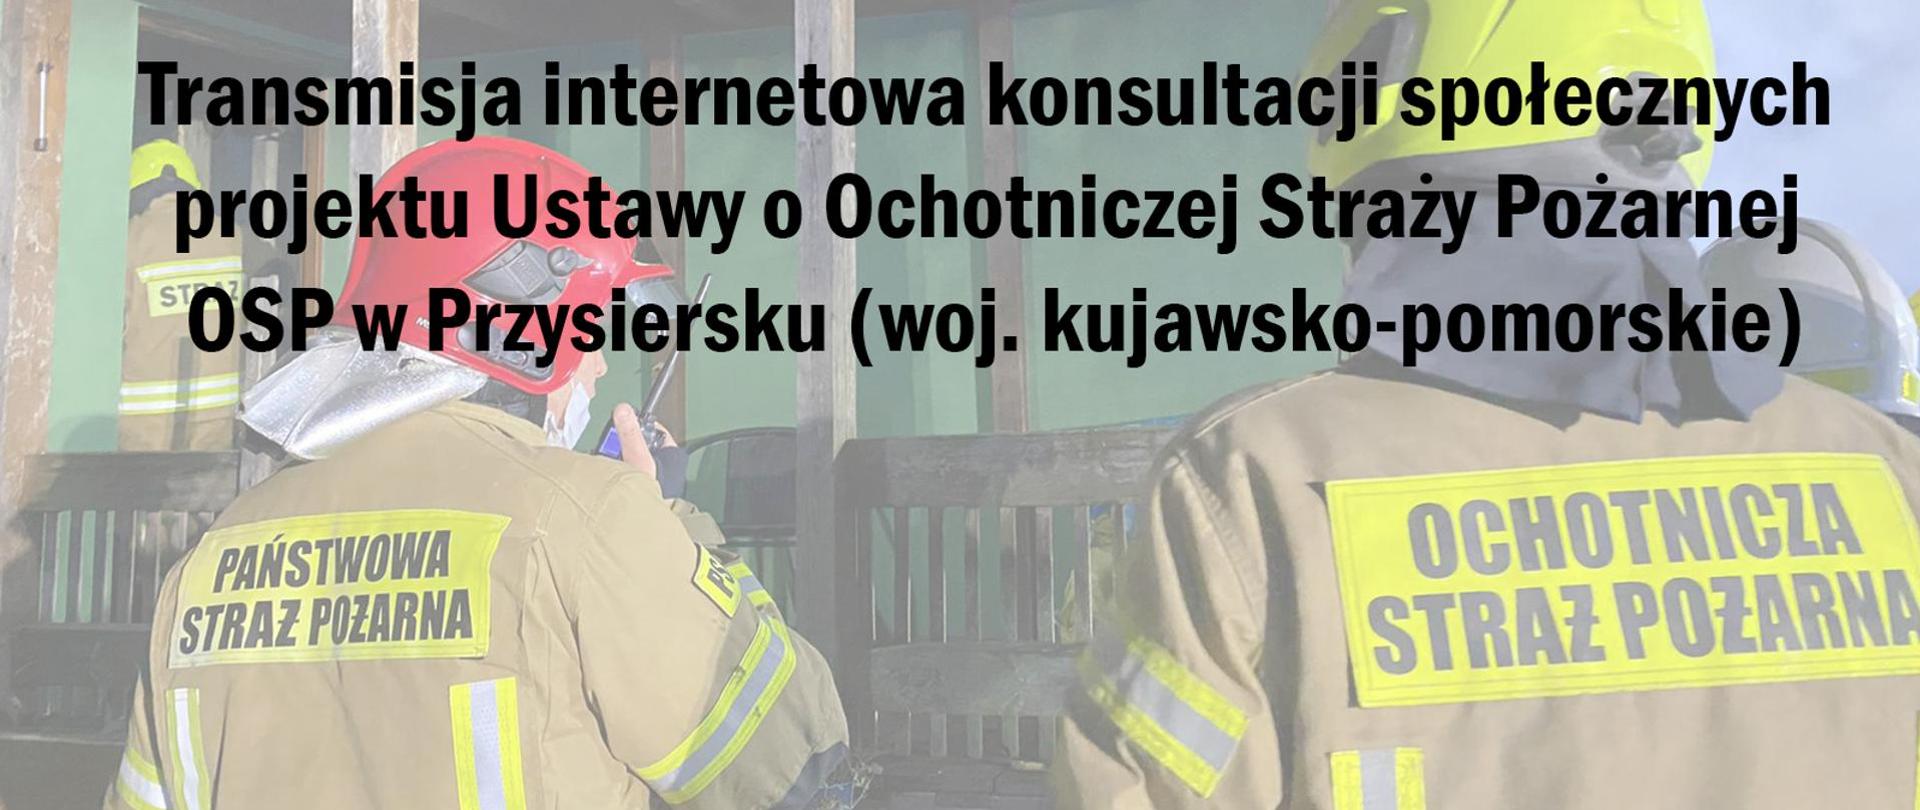 Zdjęcie przedstawia czarny napis "Transmisja internetowa konsultacji społecznych projektu Ustawy o Ochotniczej Straży Pożarnej" na tle strażaka PSP i OSP ubranych w ubrania specjalne i hełmy